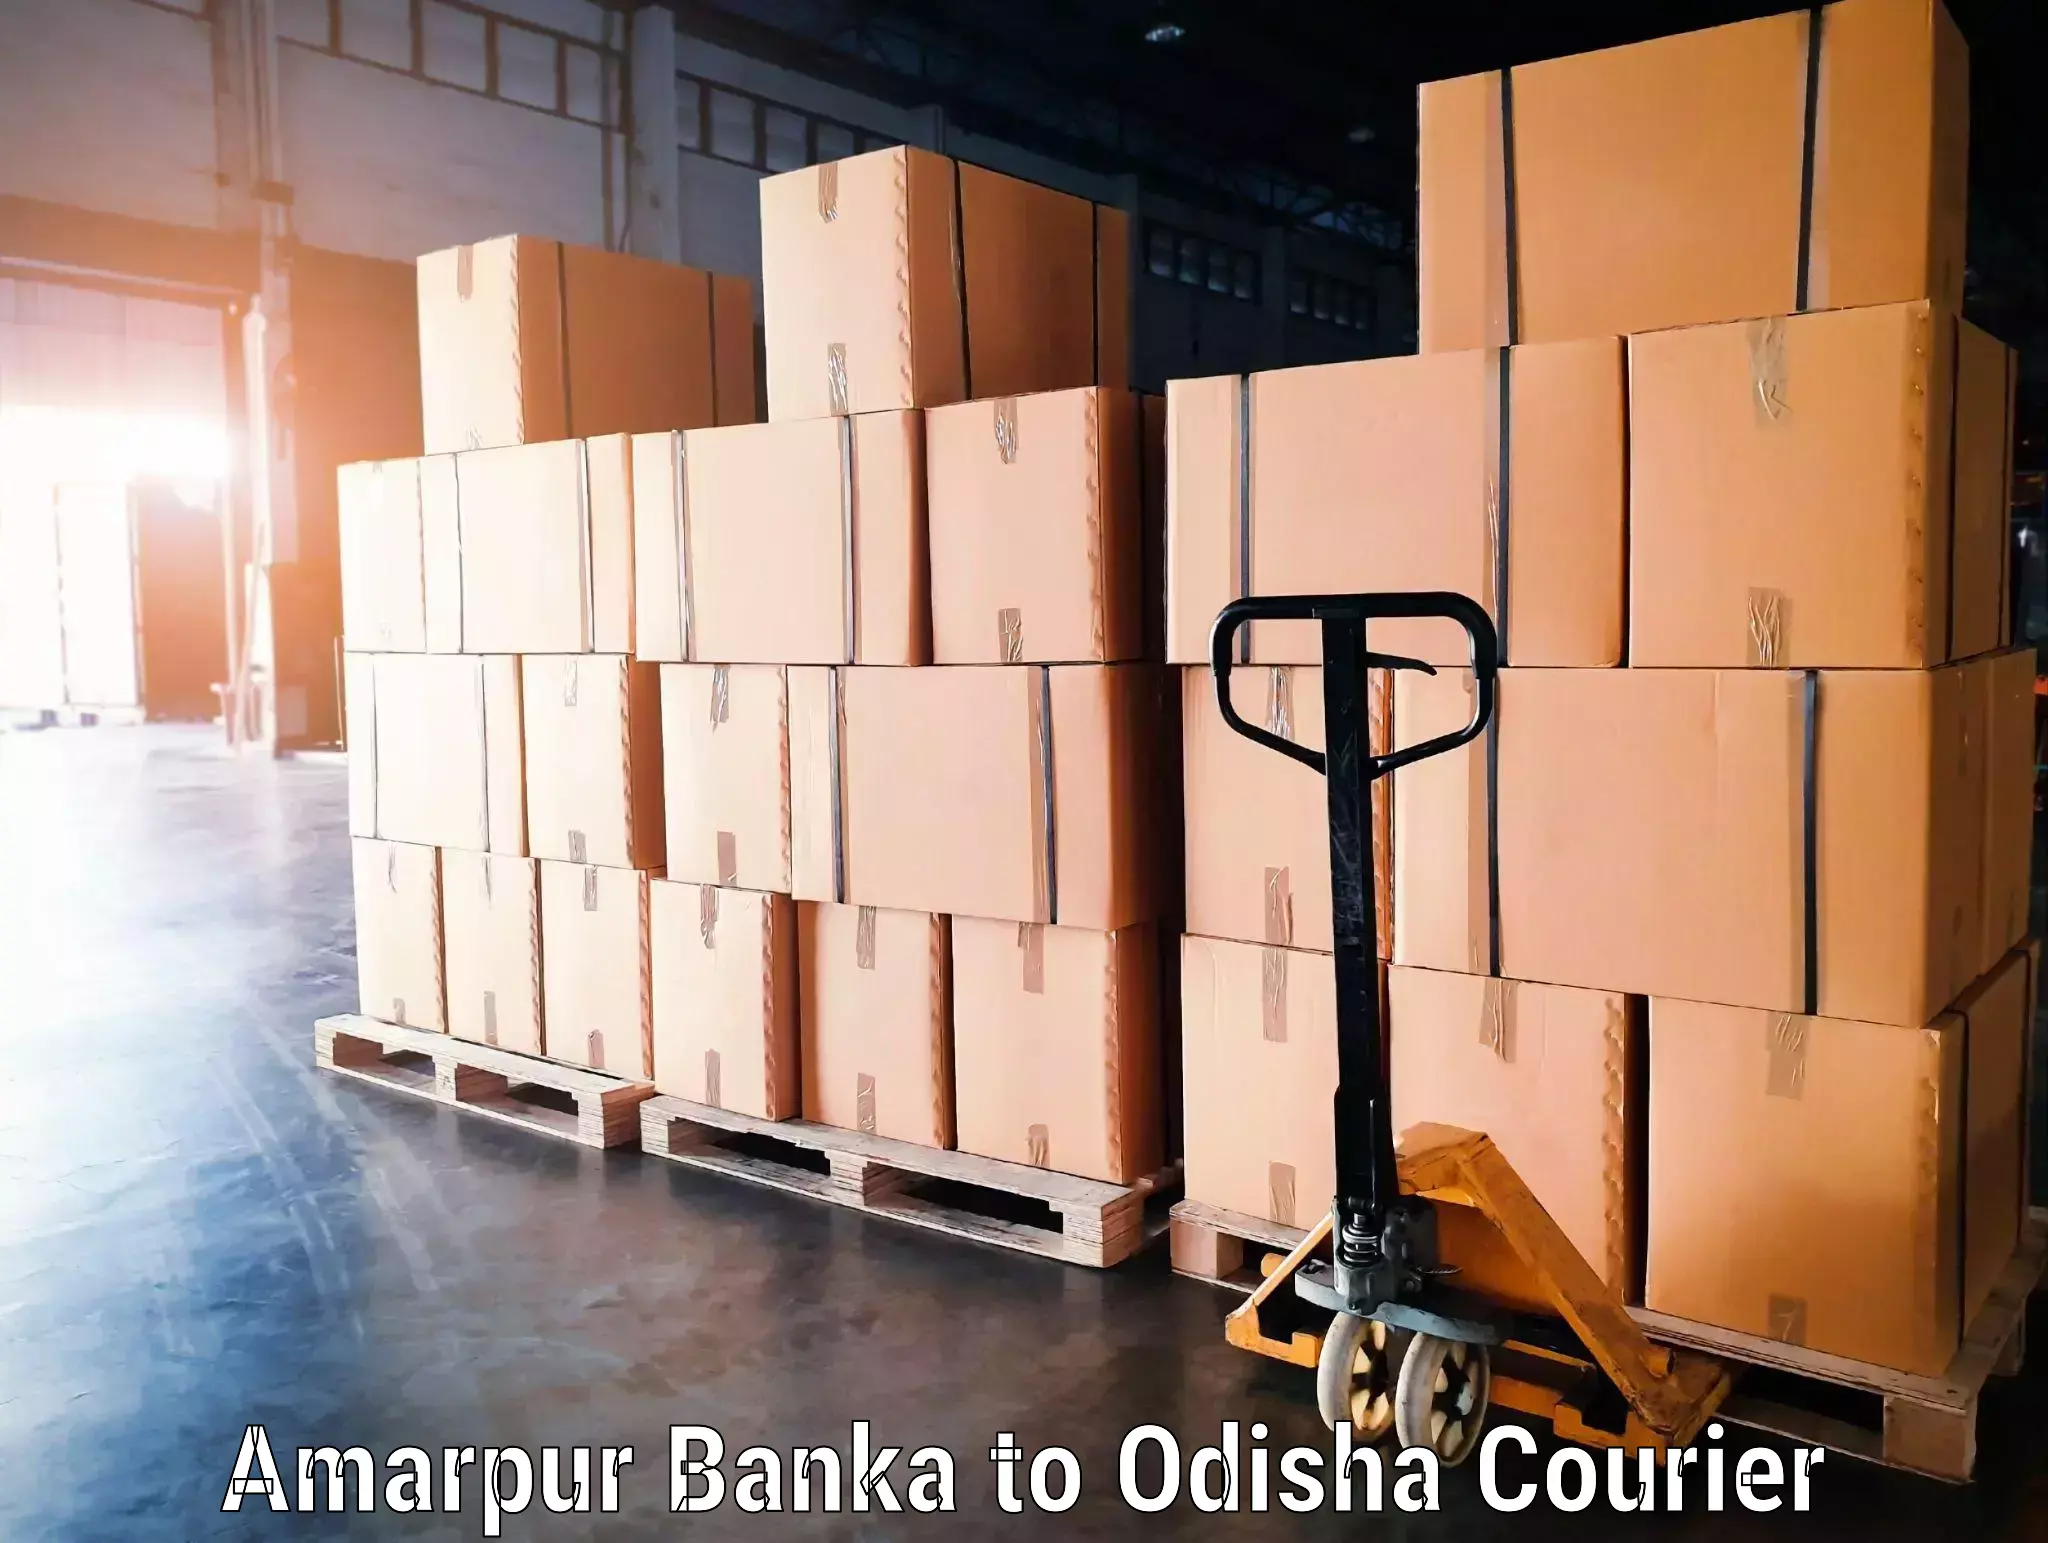 Baggage transport management Amarpur Banka to Balimela